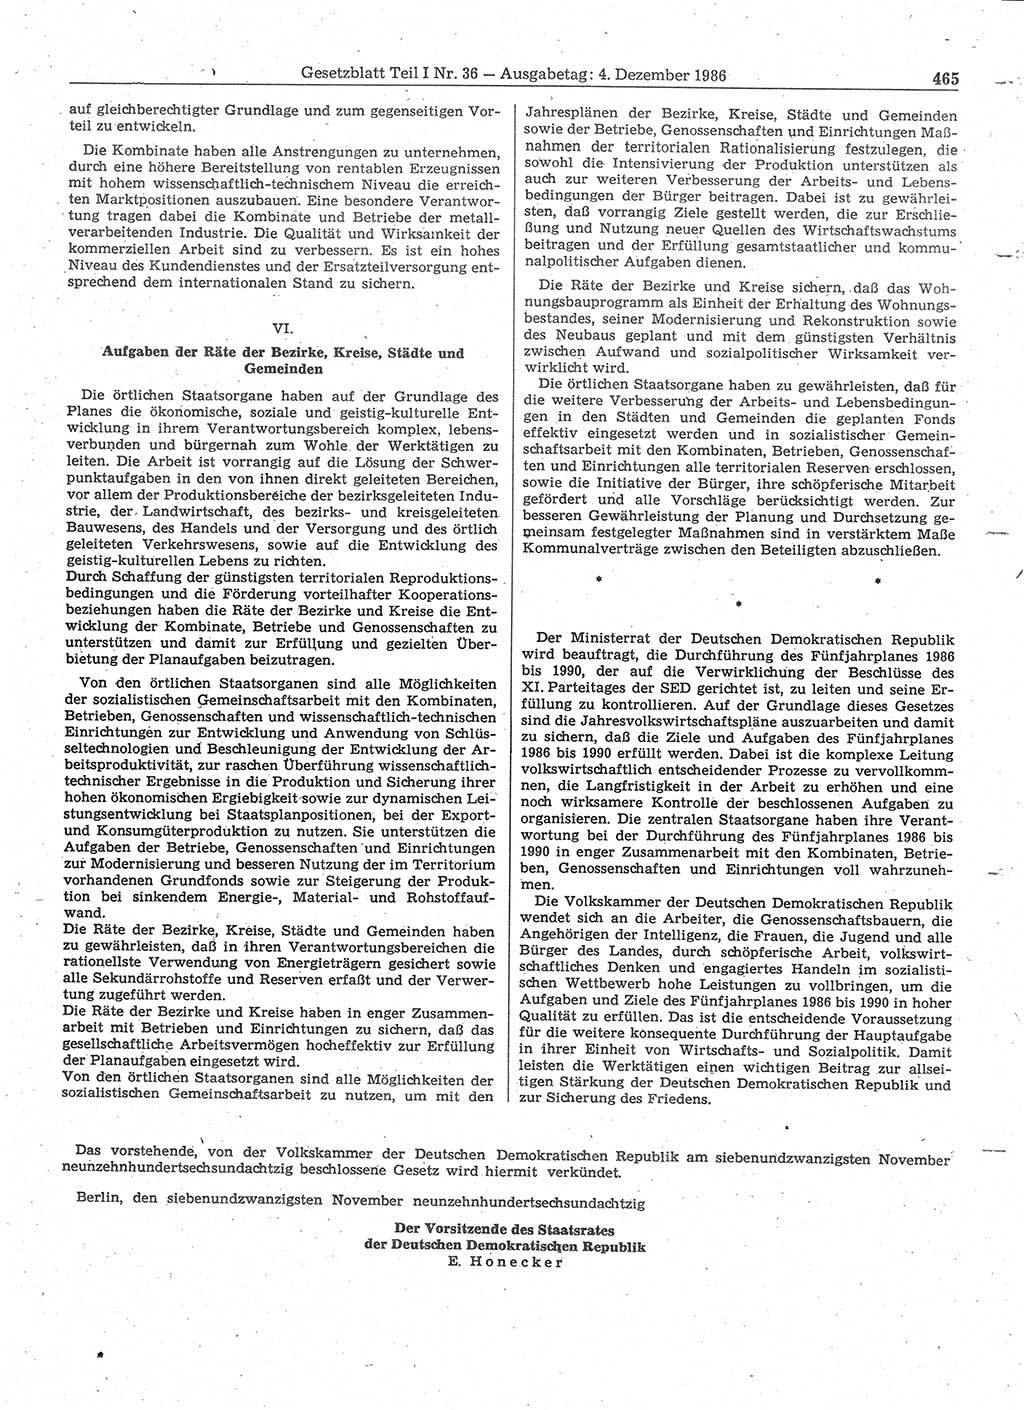 Gesetzblatt (GBl.) der Deutschen Demokratischen Republik (DDR) Teil Ⅰ 1986, Seite 465 (GBl. DDR Ⅰ 1986, S. 465)